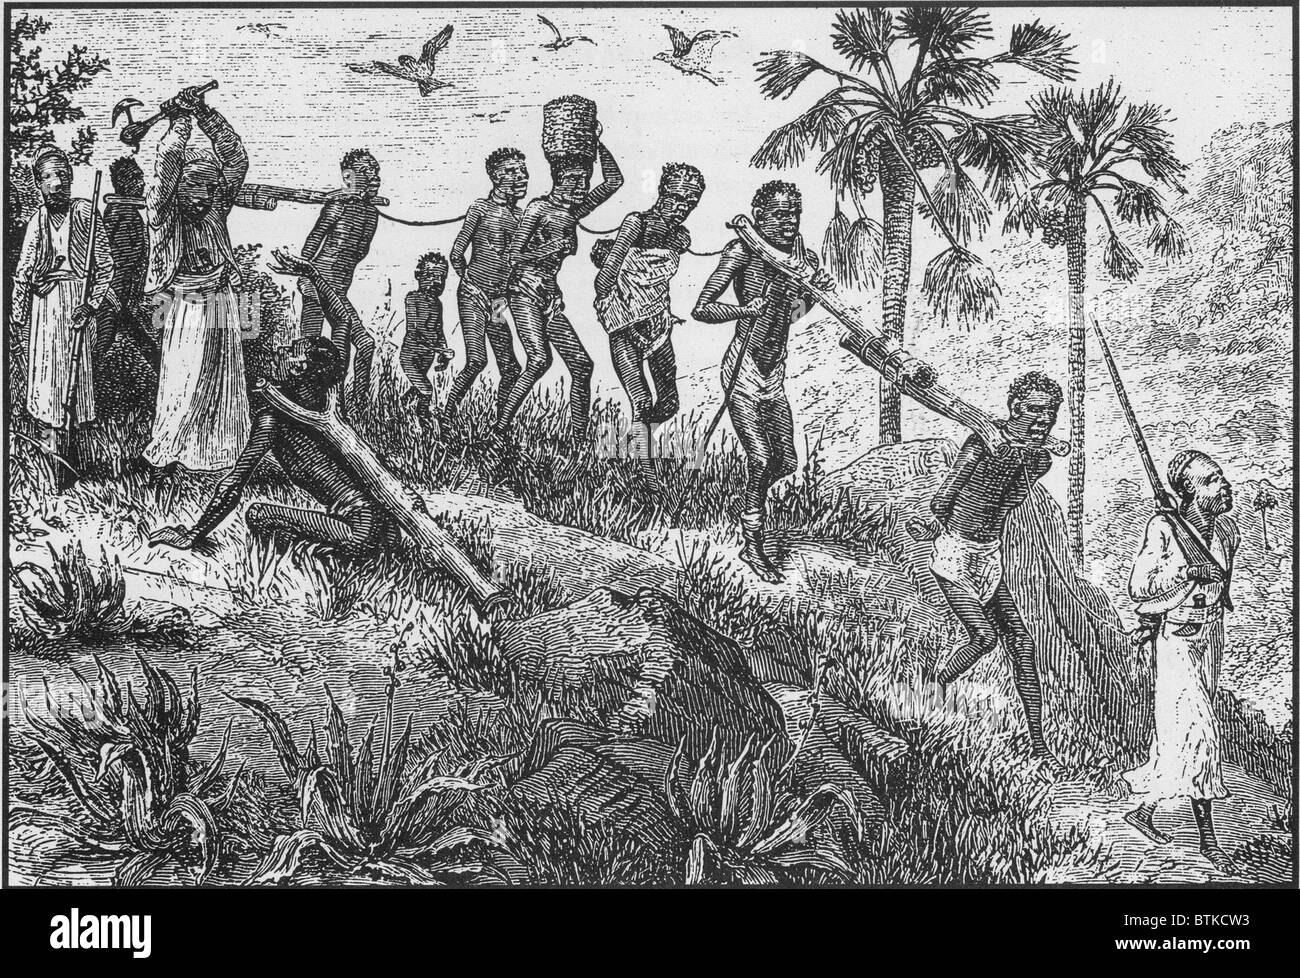 Afrikanischen Gefangenen wurden zusammen mit Protokollen paarte und ging aus dem Inneren an die Küste zum Verkauf an Europäer und später nahöstlichen Slaver Händler für den Transport. Wer zu schwach zu gehen waren oft getötet. 19. Jahrhundert-Gravur. Stockfoto